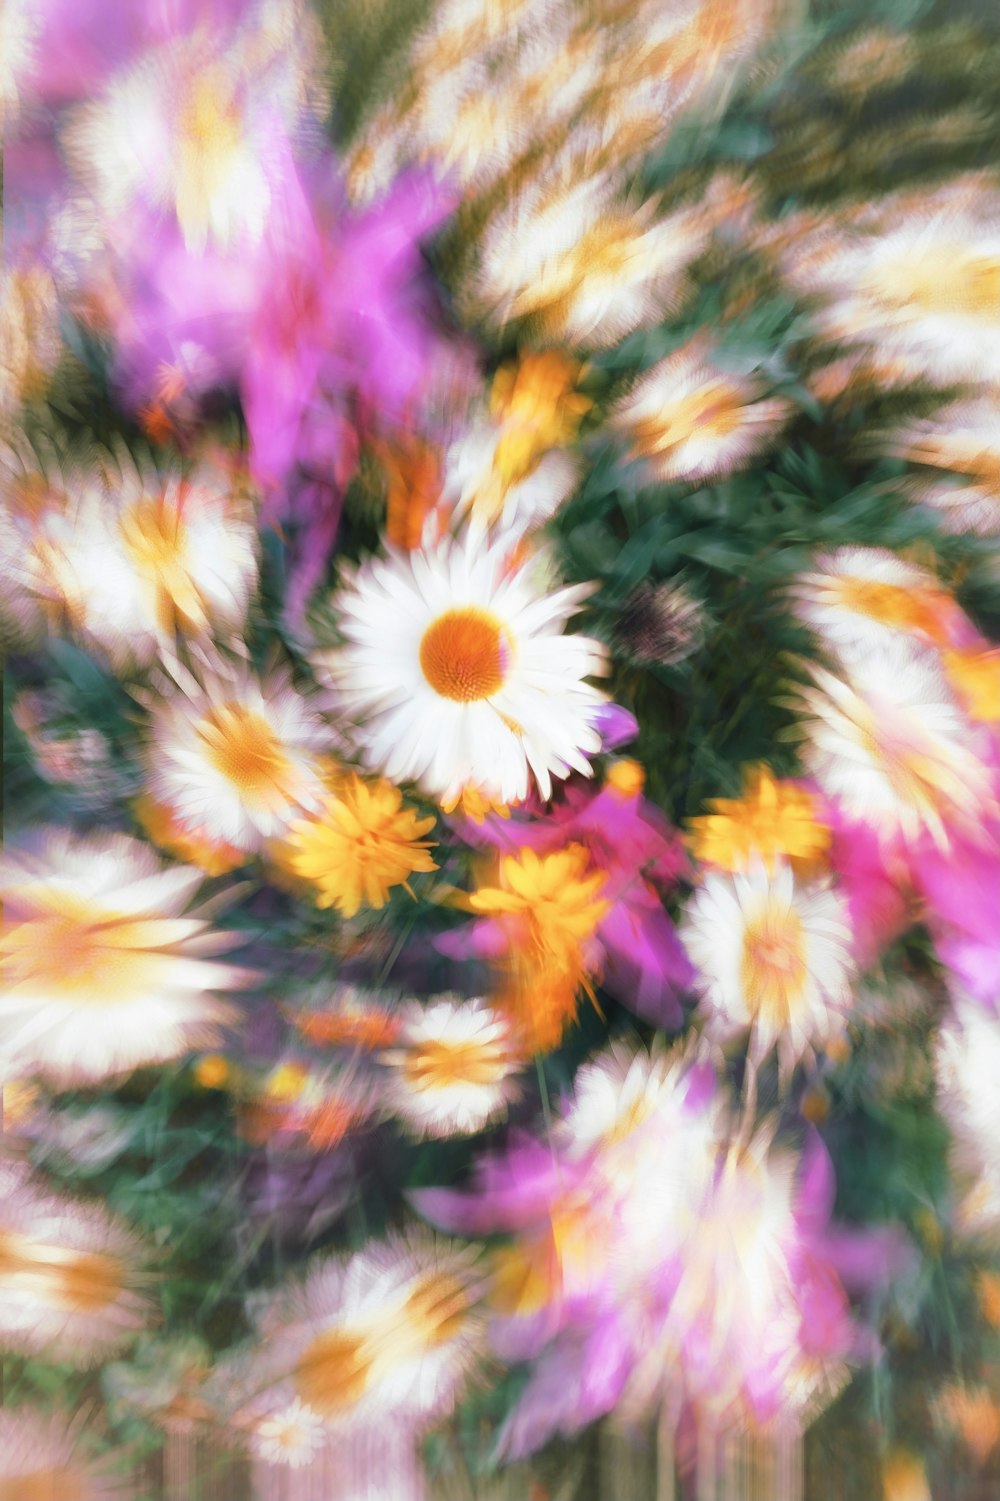 a blurry photo of a flower arrangement